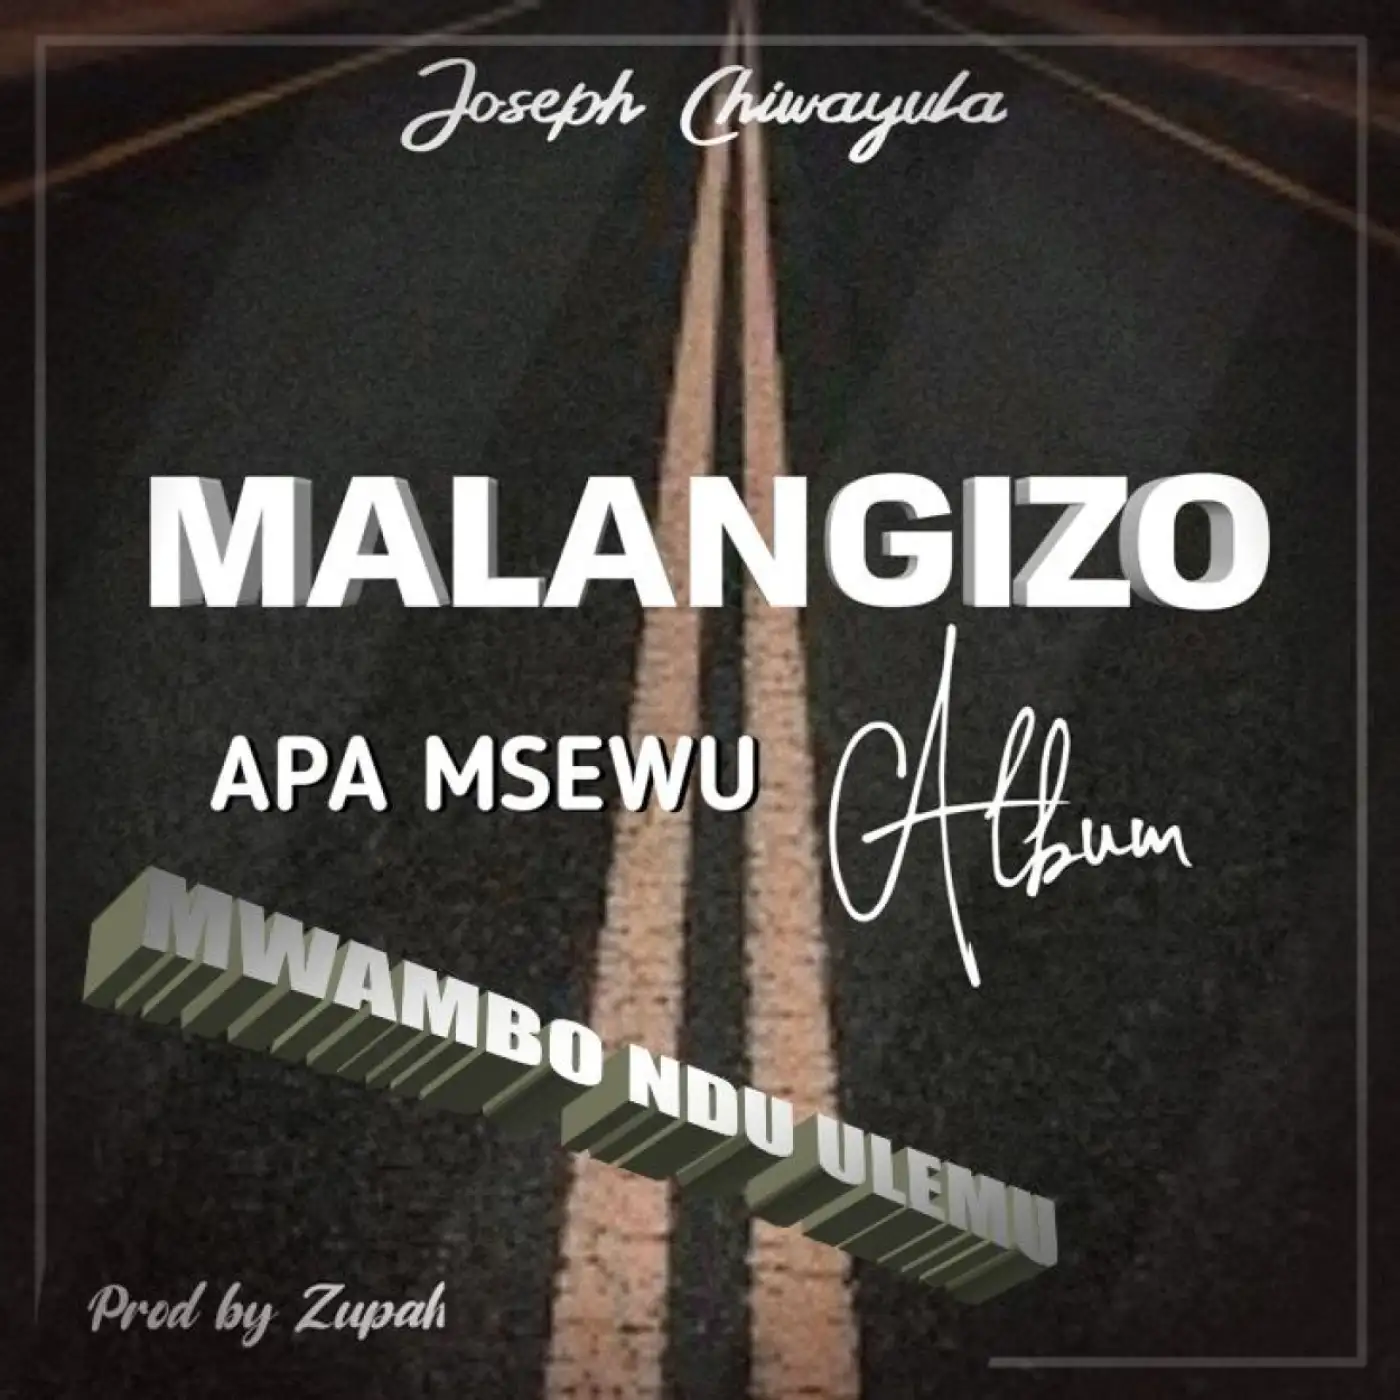 Joseph Chiwayula-Joseph Chiwayula - Mwambo Ndi Ulemu (Prod. Zupah)-song artwork cover